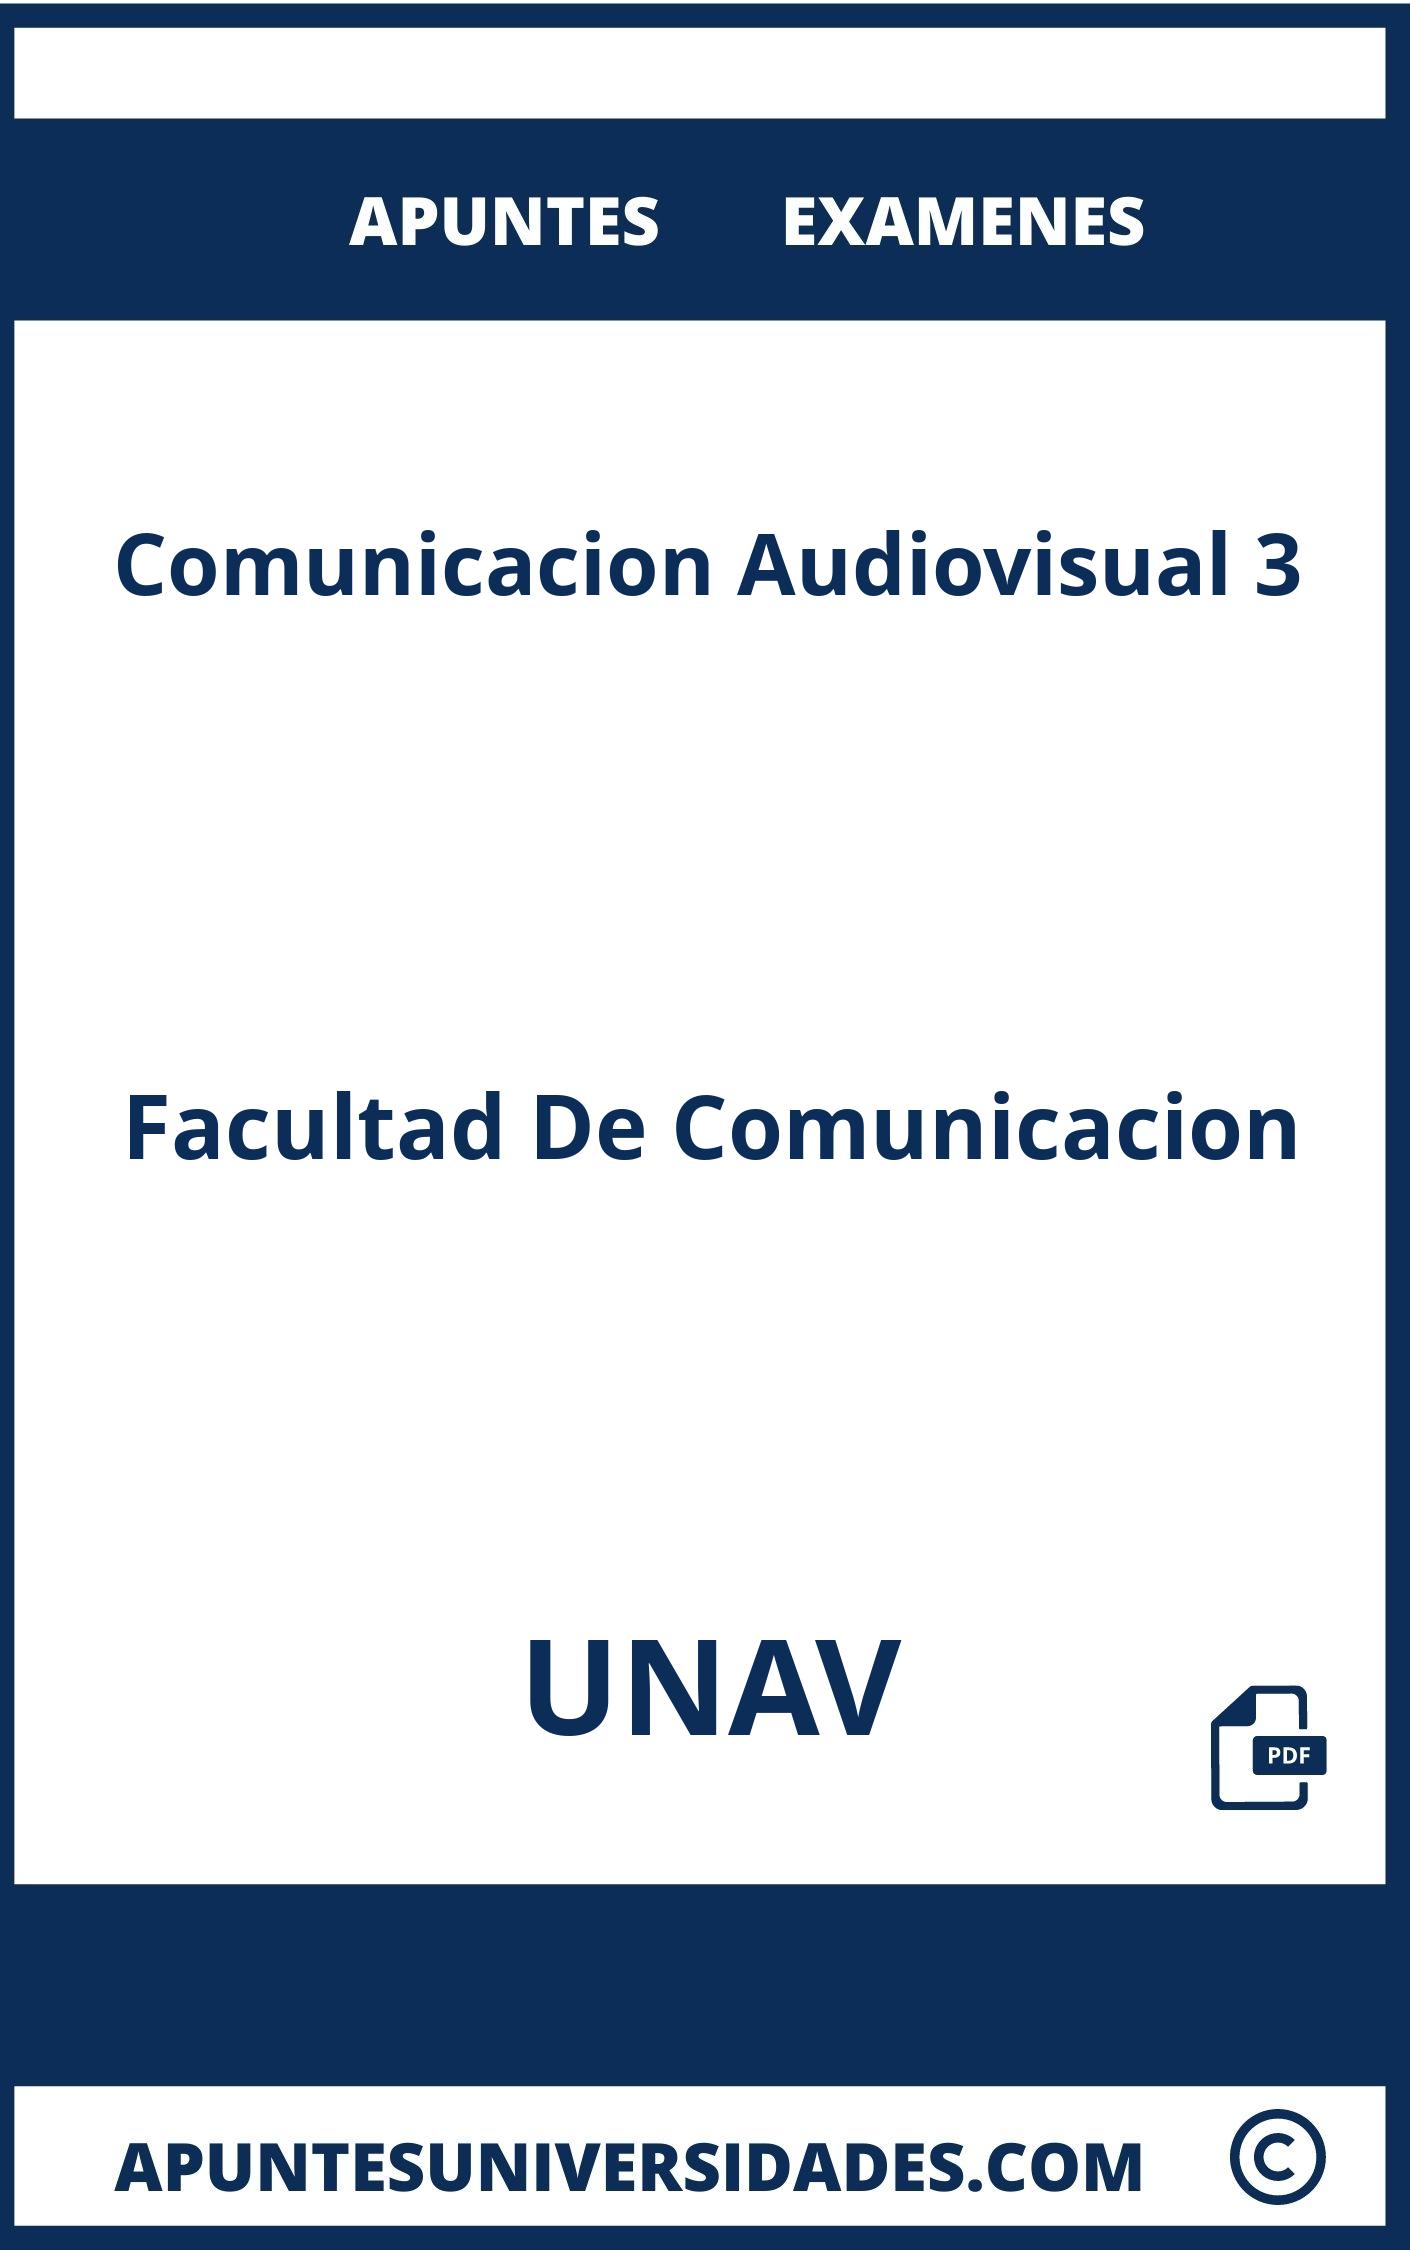 Apuntes Comunicacion Audiovisual 3 UNAV y Examenes